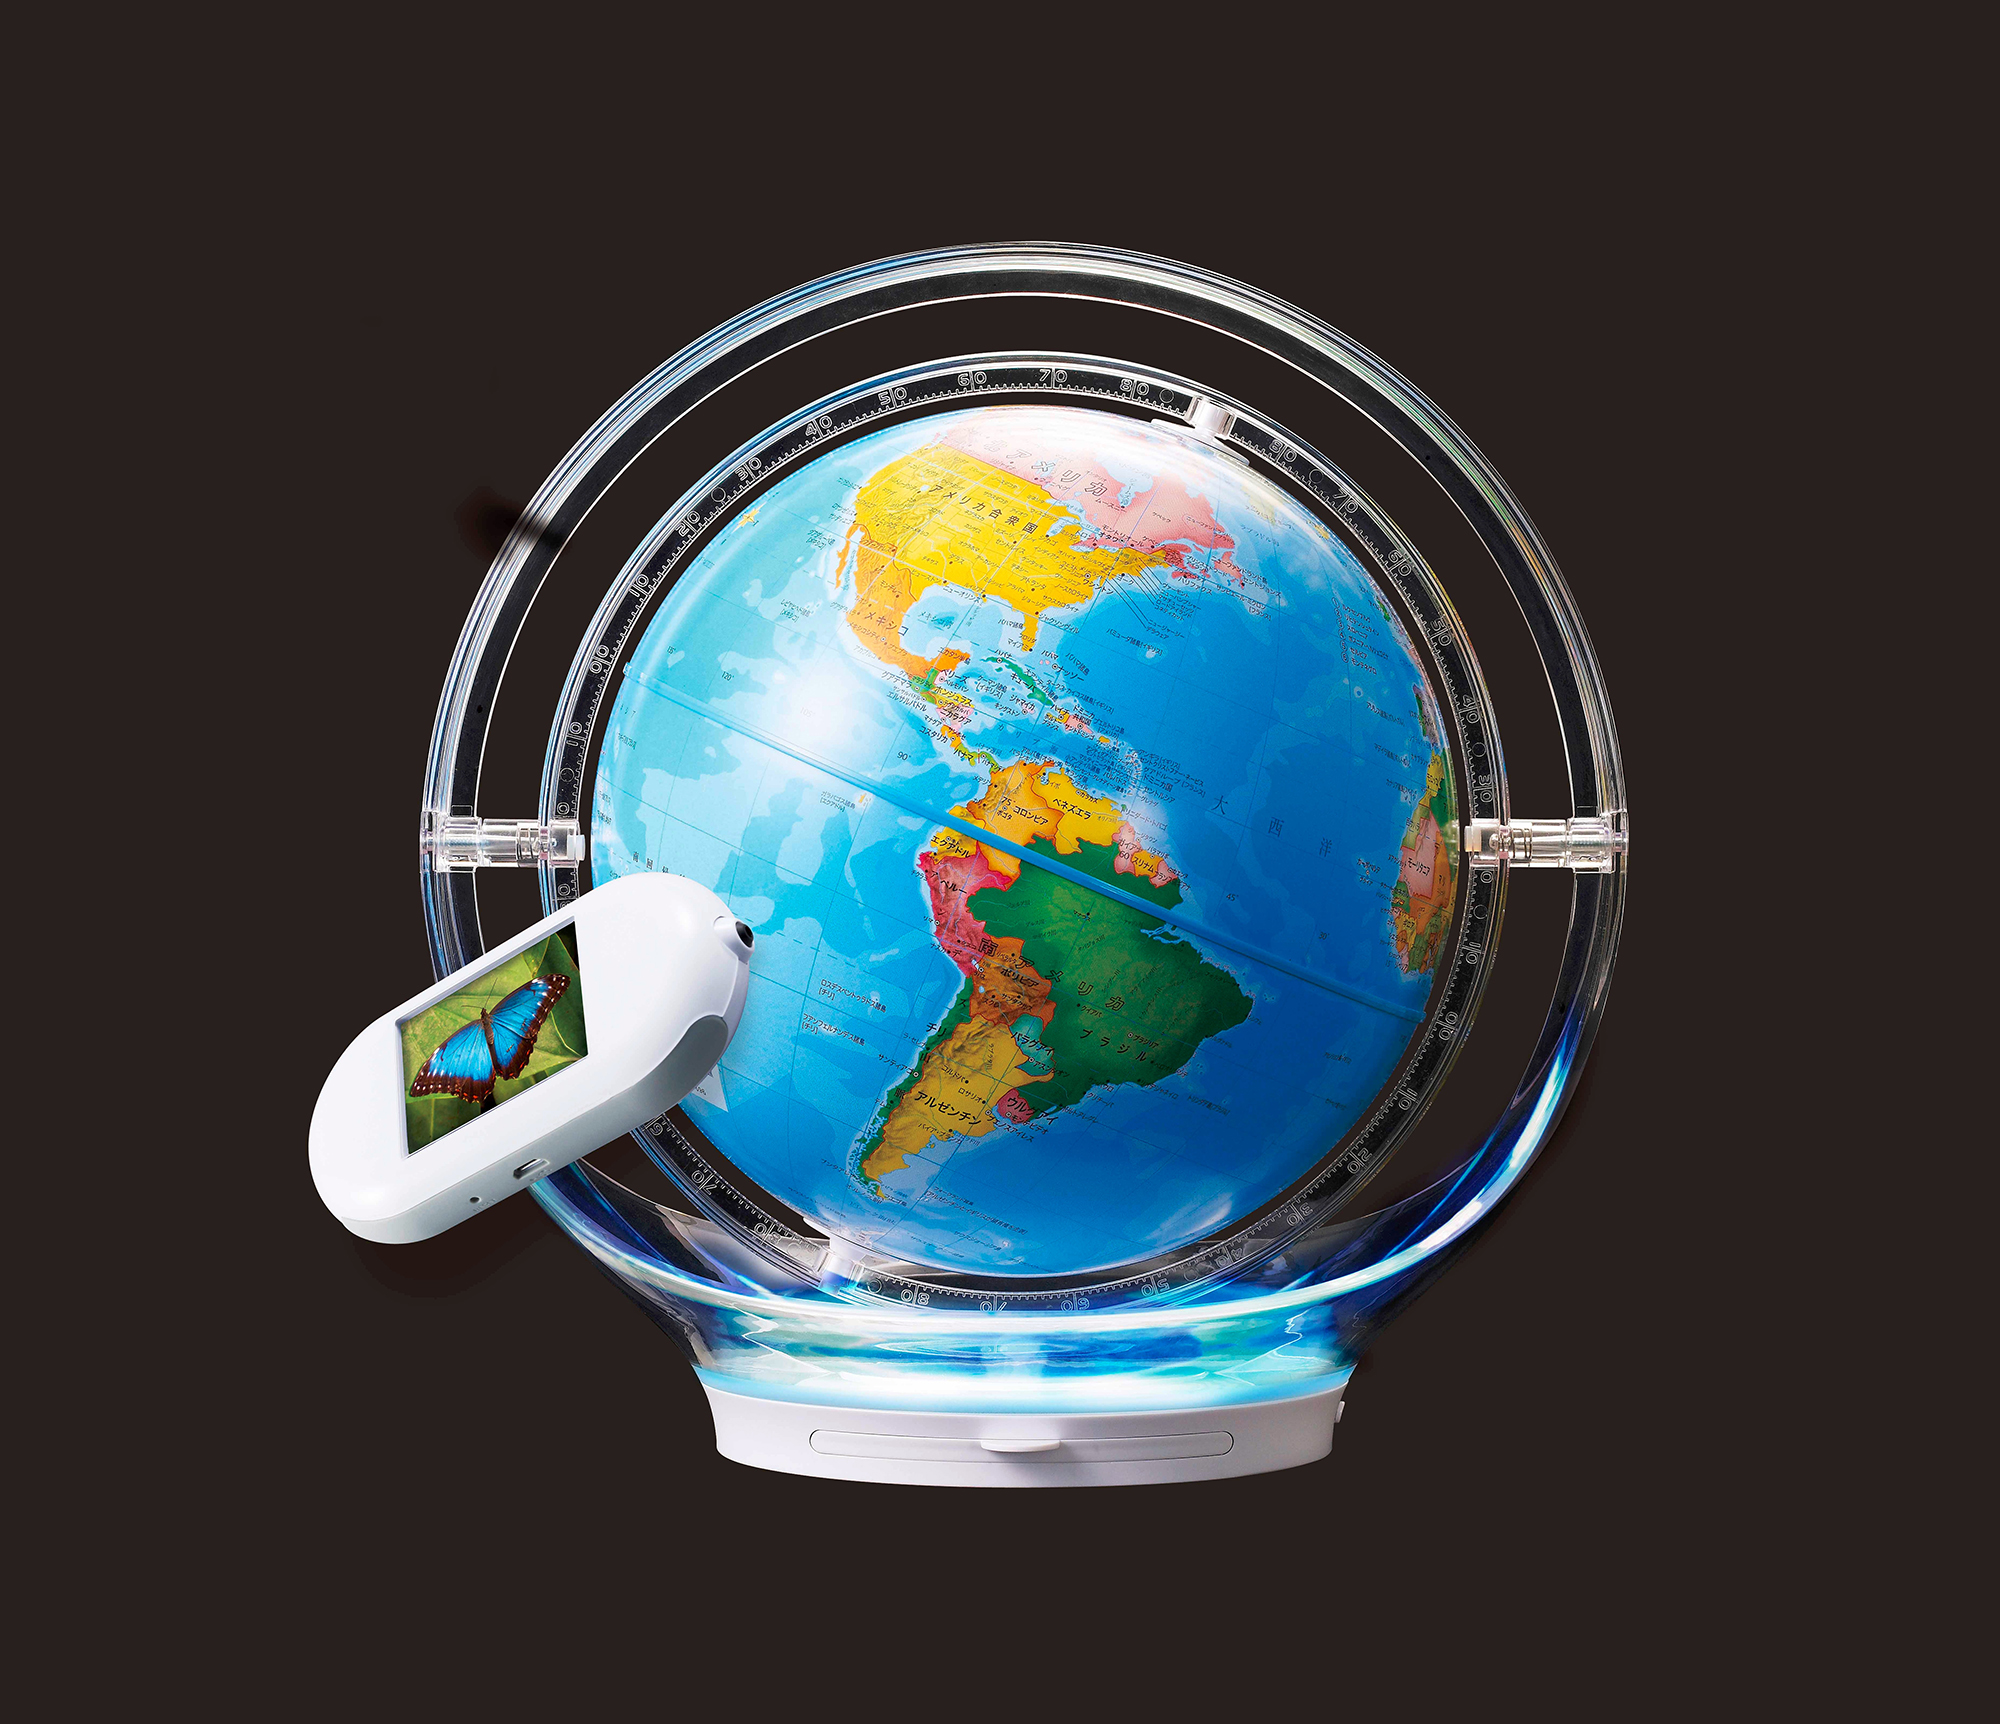 液晶画面付きタッチペンで楽しく学ぶ「しゃべる地球儀」最新版 | ICT